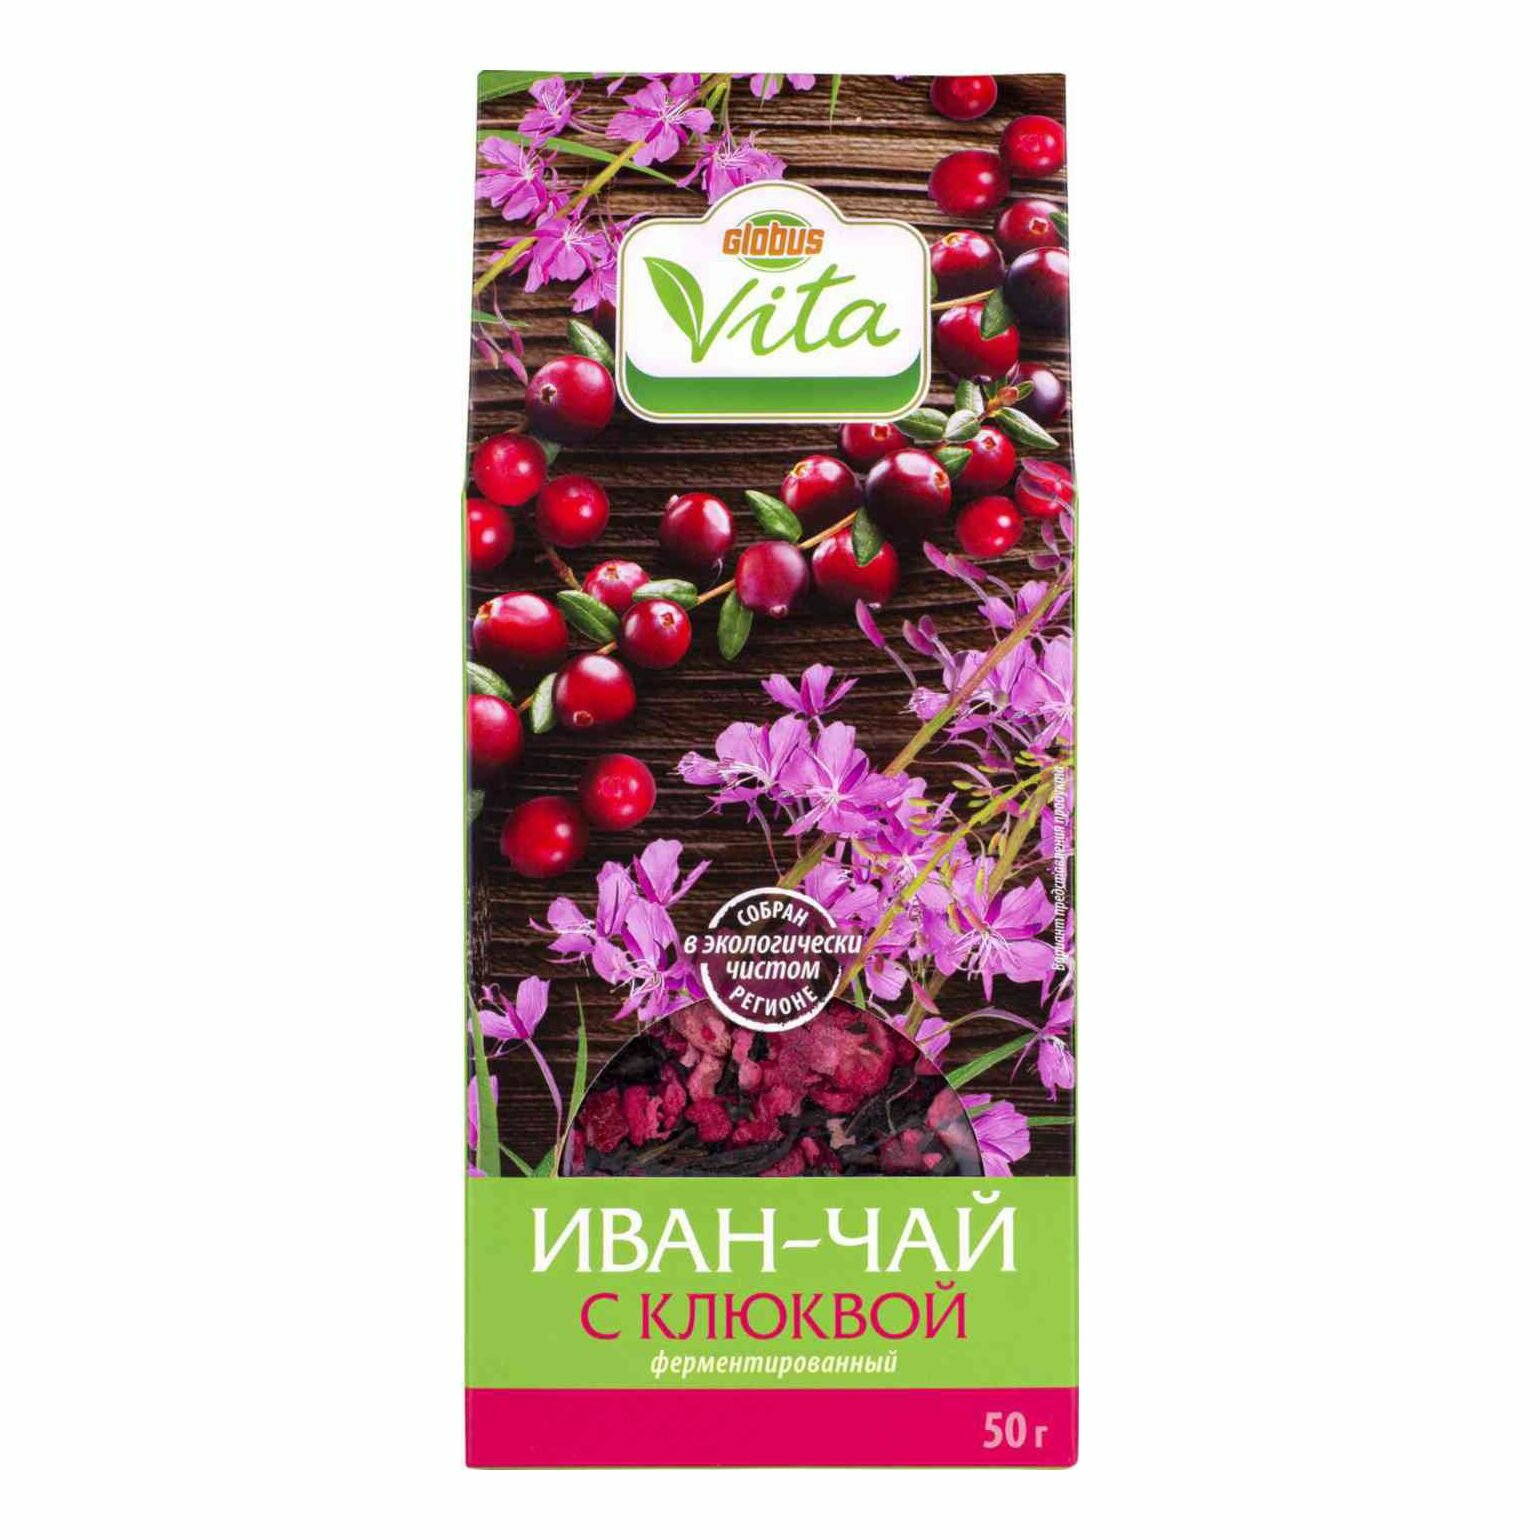 Чайный напиток Иван-чай ферментированный Глобус Вита с клюквой,50 г